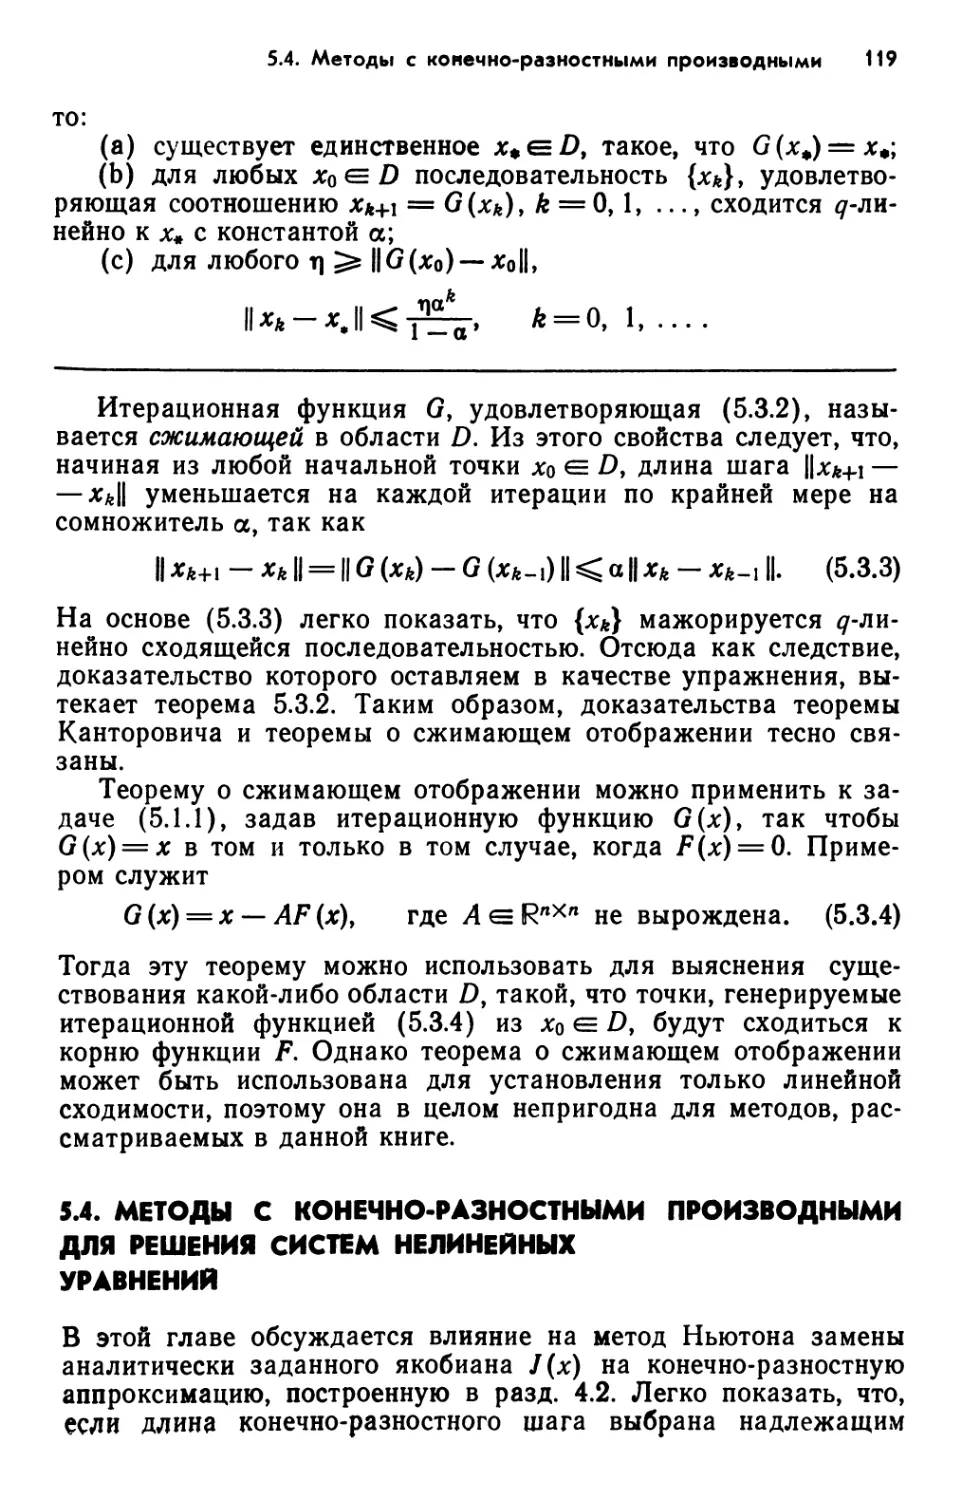 5.4. Методы с конечно-разностными производными для решения систем нелинейных уравнений